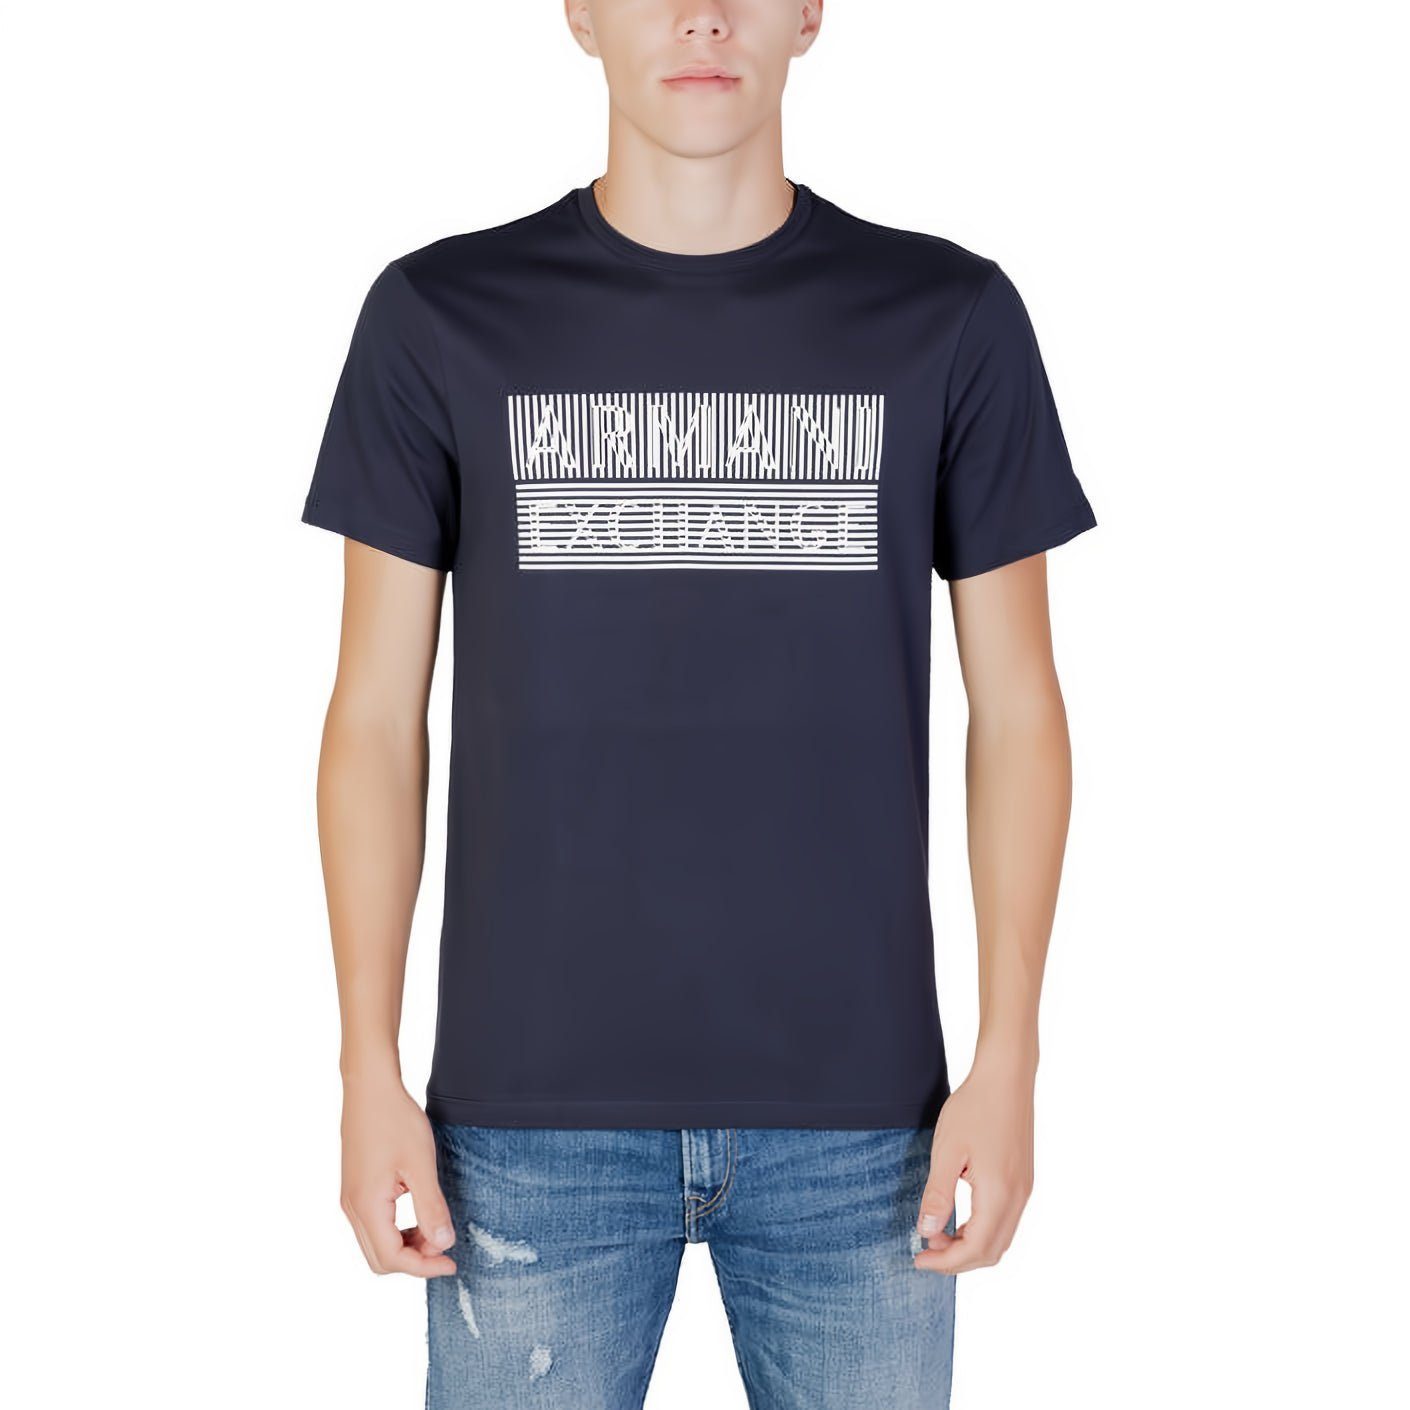 Ihre ein Must-Have EXCHANGE kurzarm, T-Shirt für Rundhals, ARMANI Kleidungskollektion!